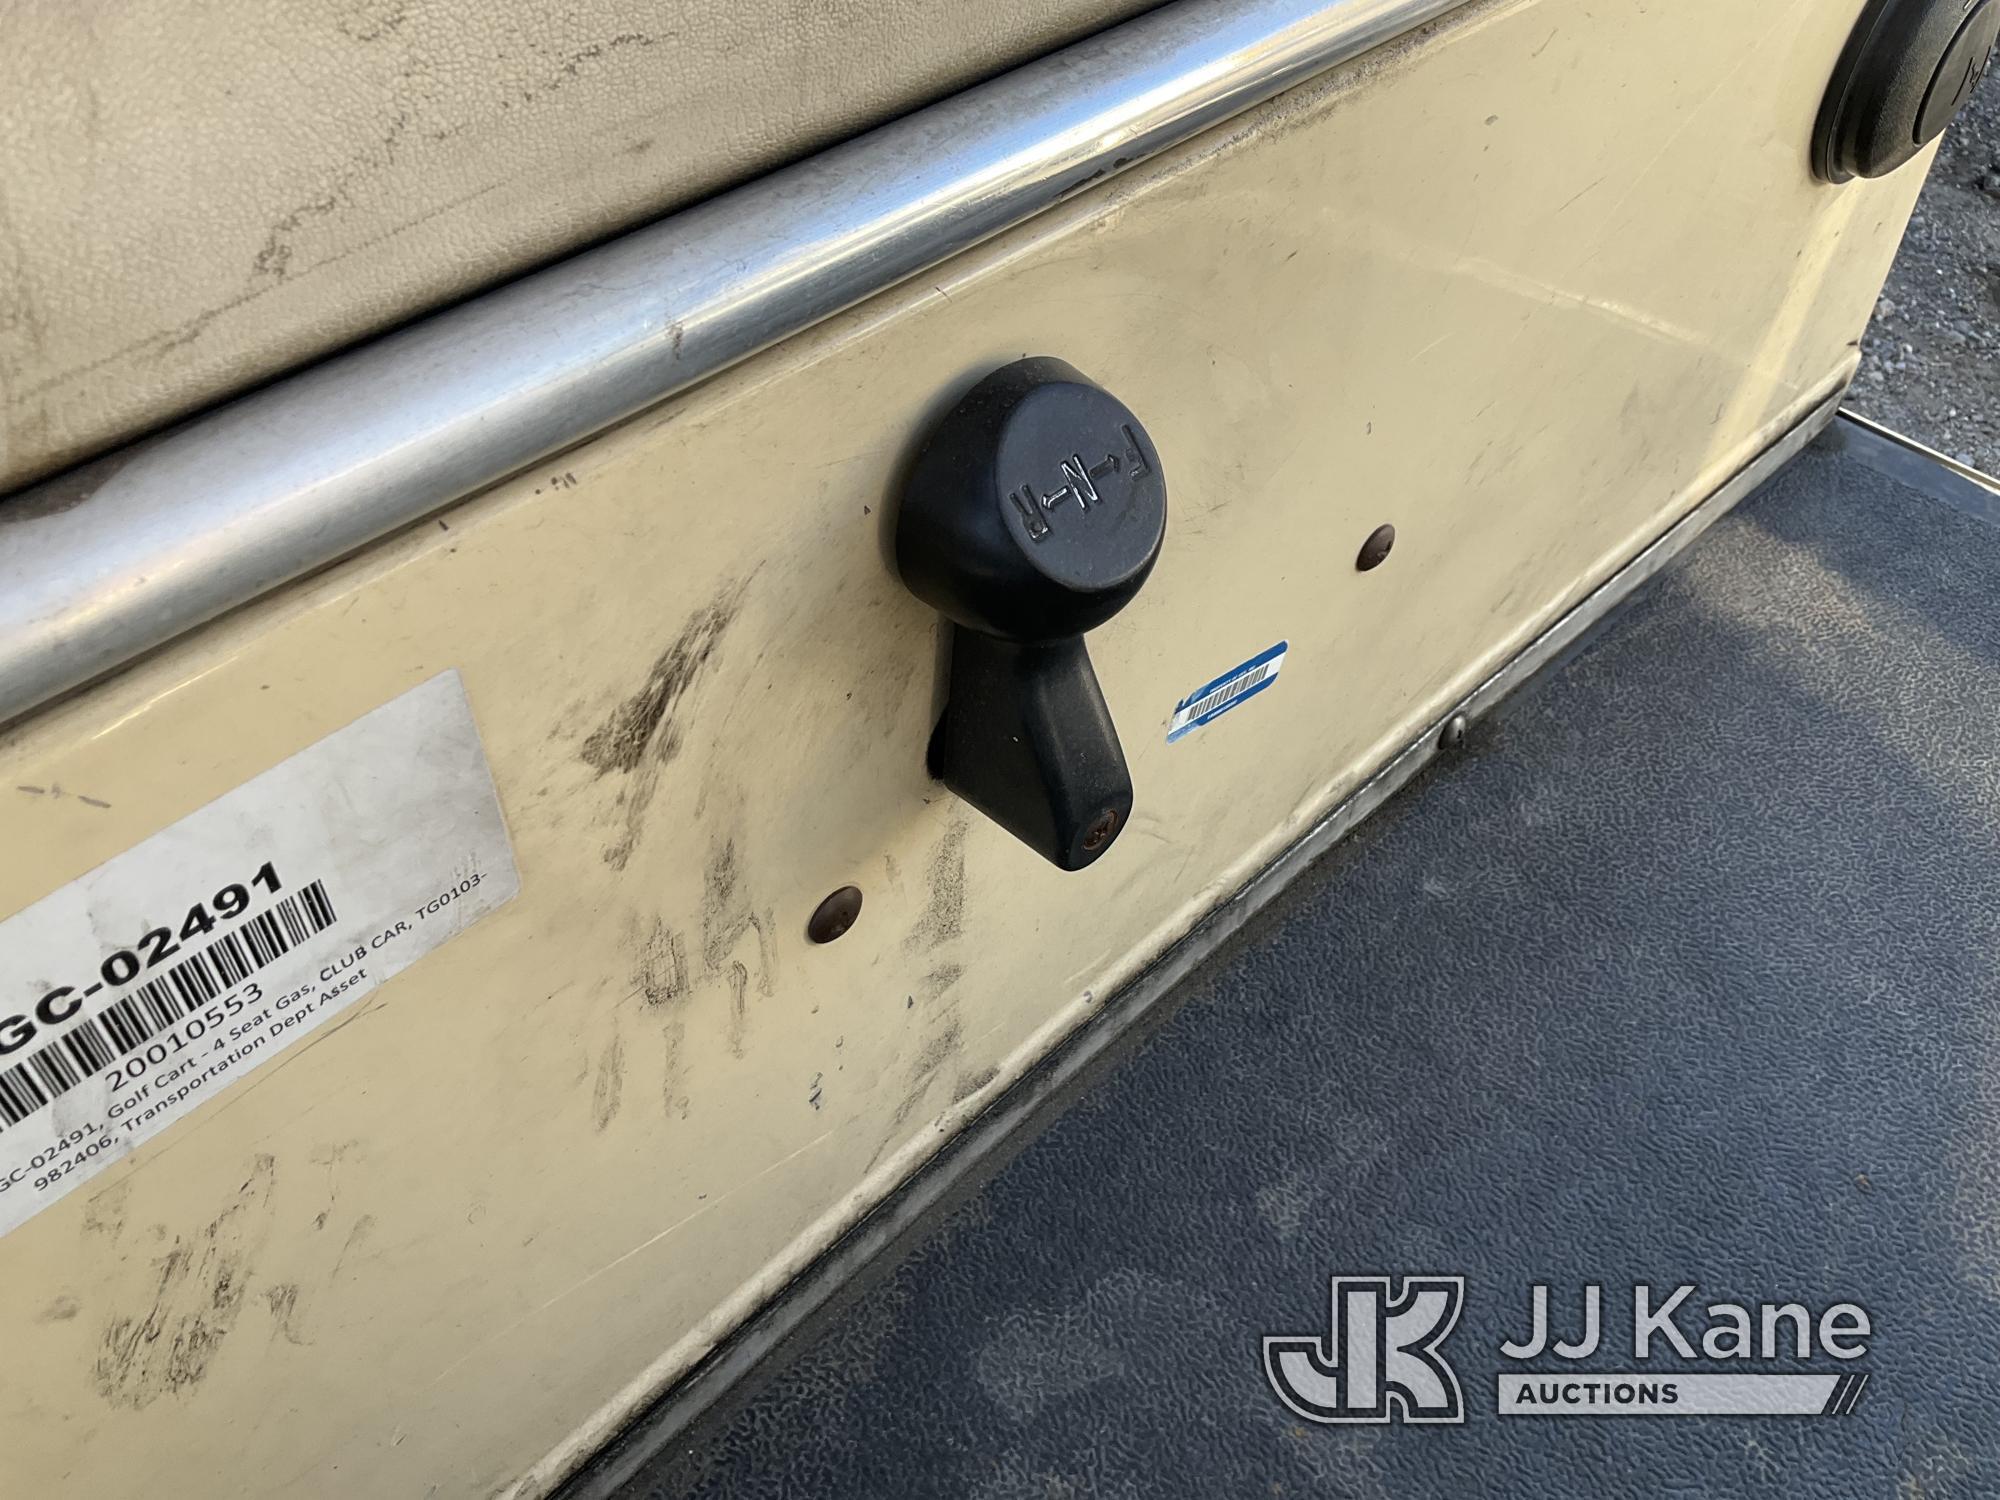 (Jurupa Valley, CA) 2000 Club Car Golf Cart Not Running, Missing Key